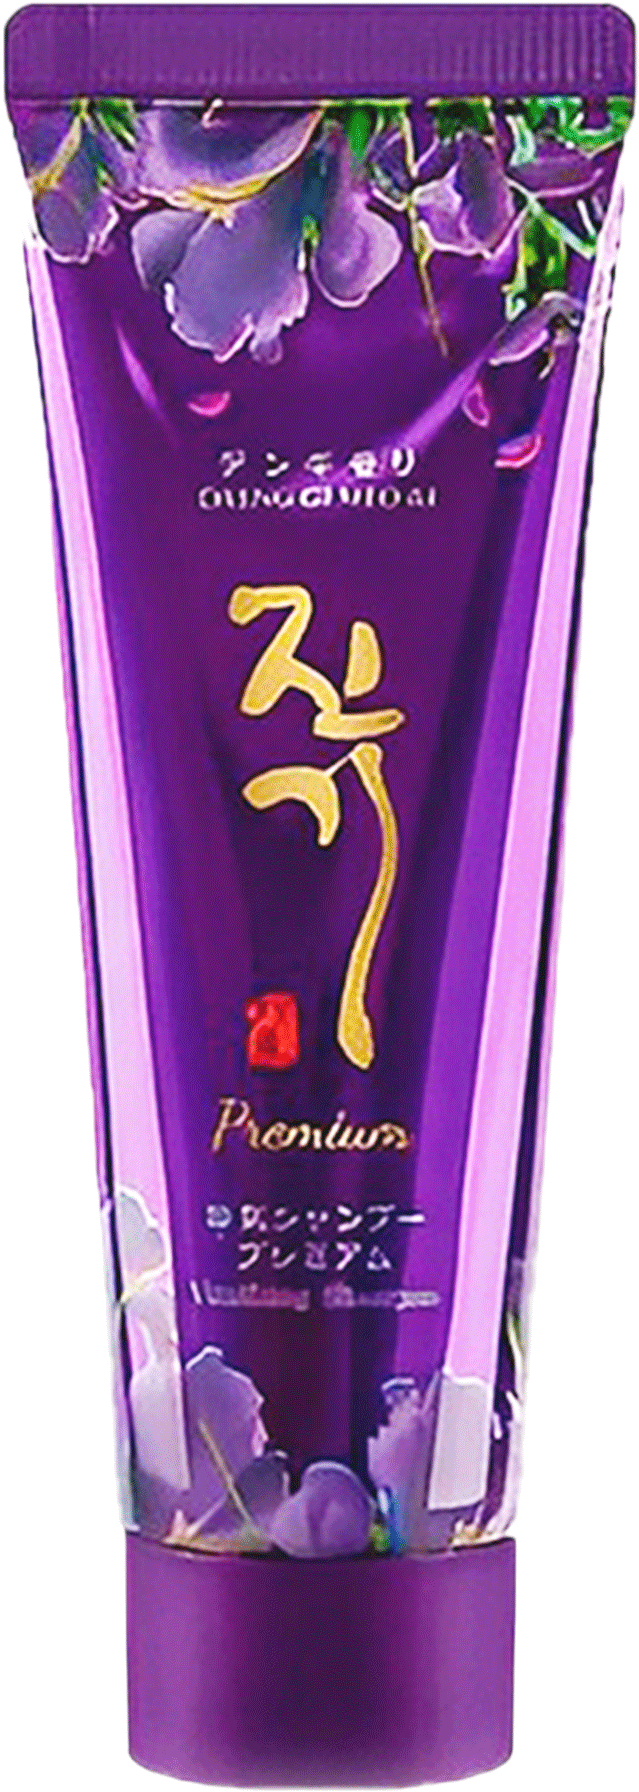 Регенеруючий преміальний шампунь - Daeng Gi Meo Ri Vitalizing Premium Shampoo, 50 мл - фото N1